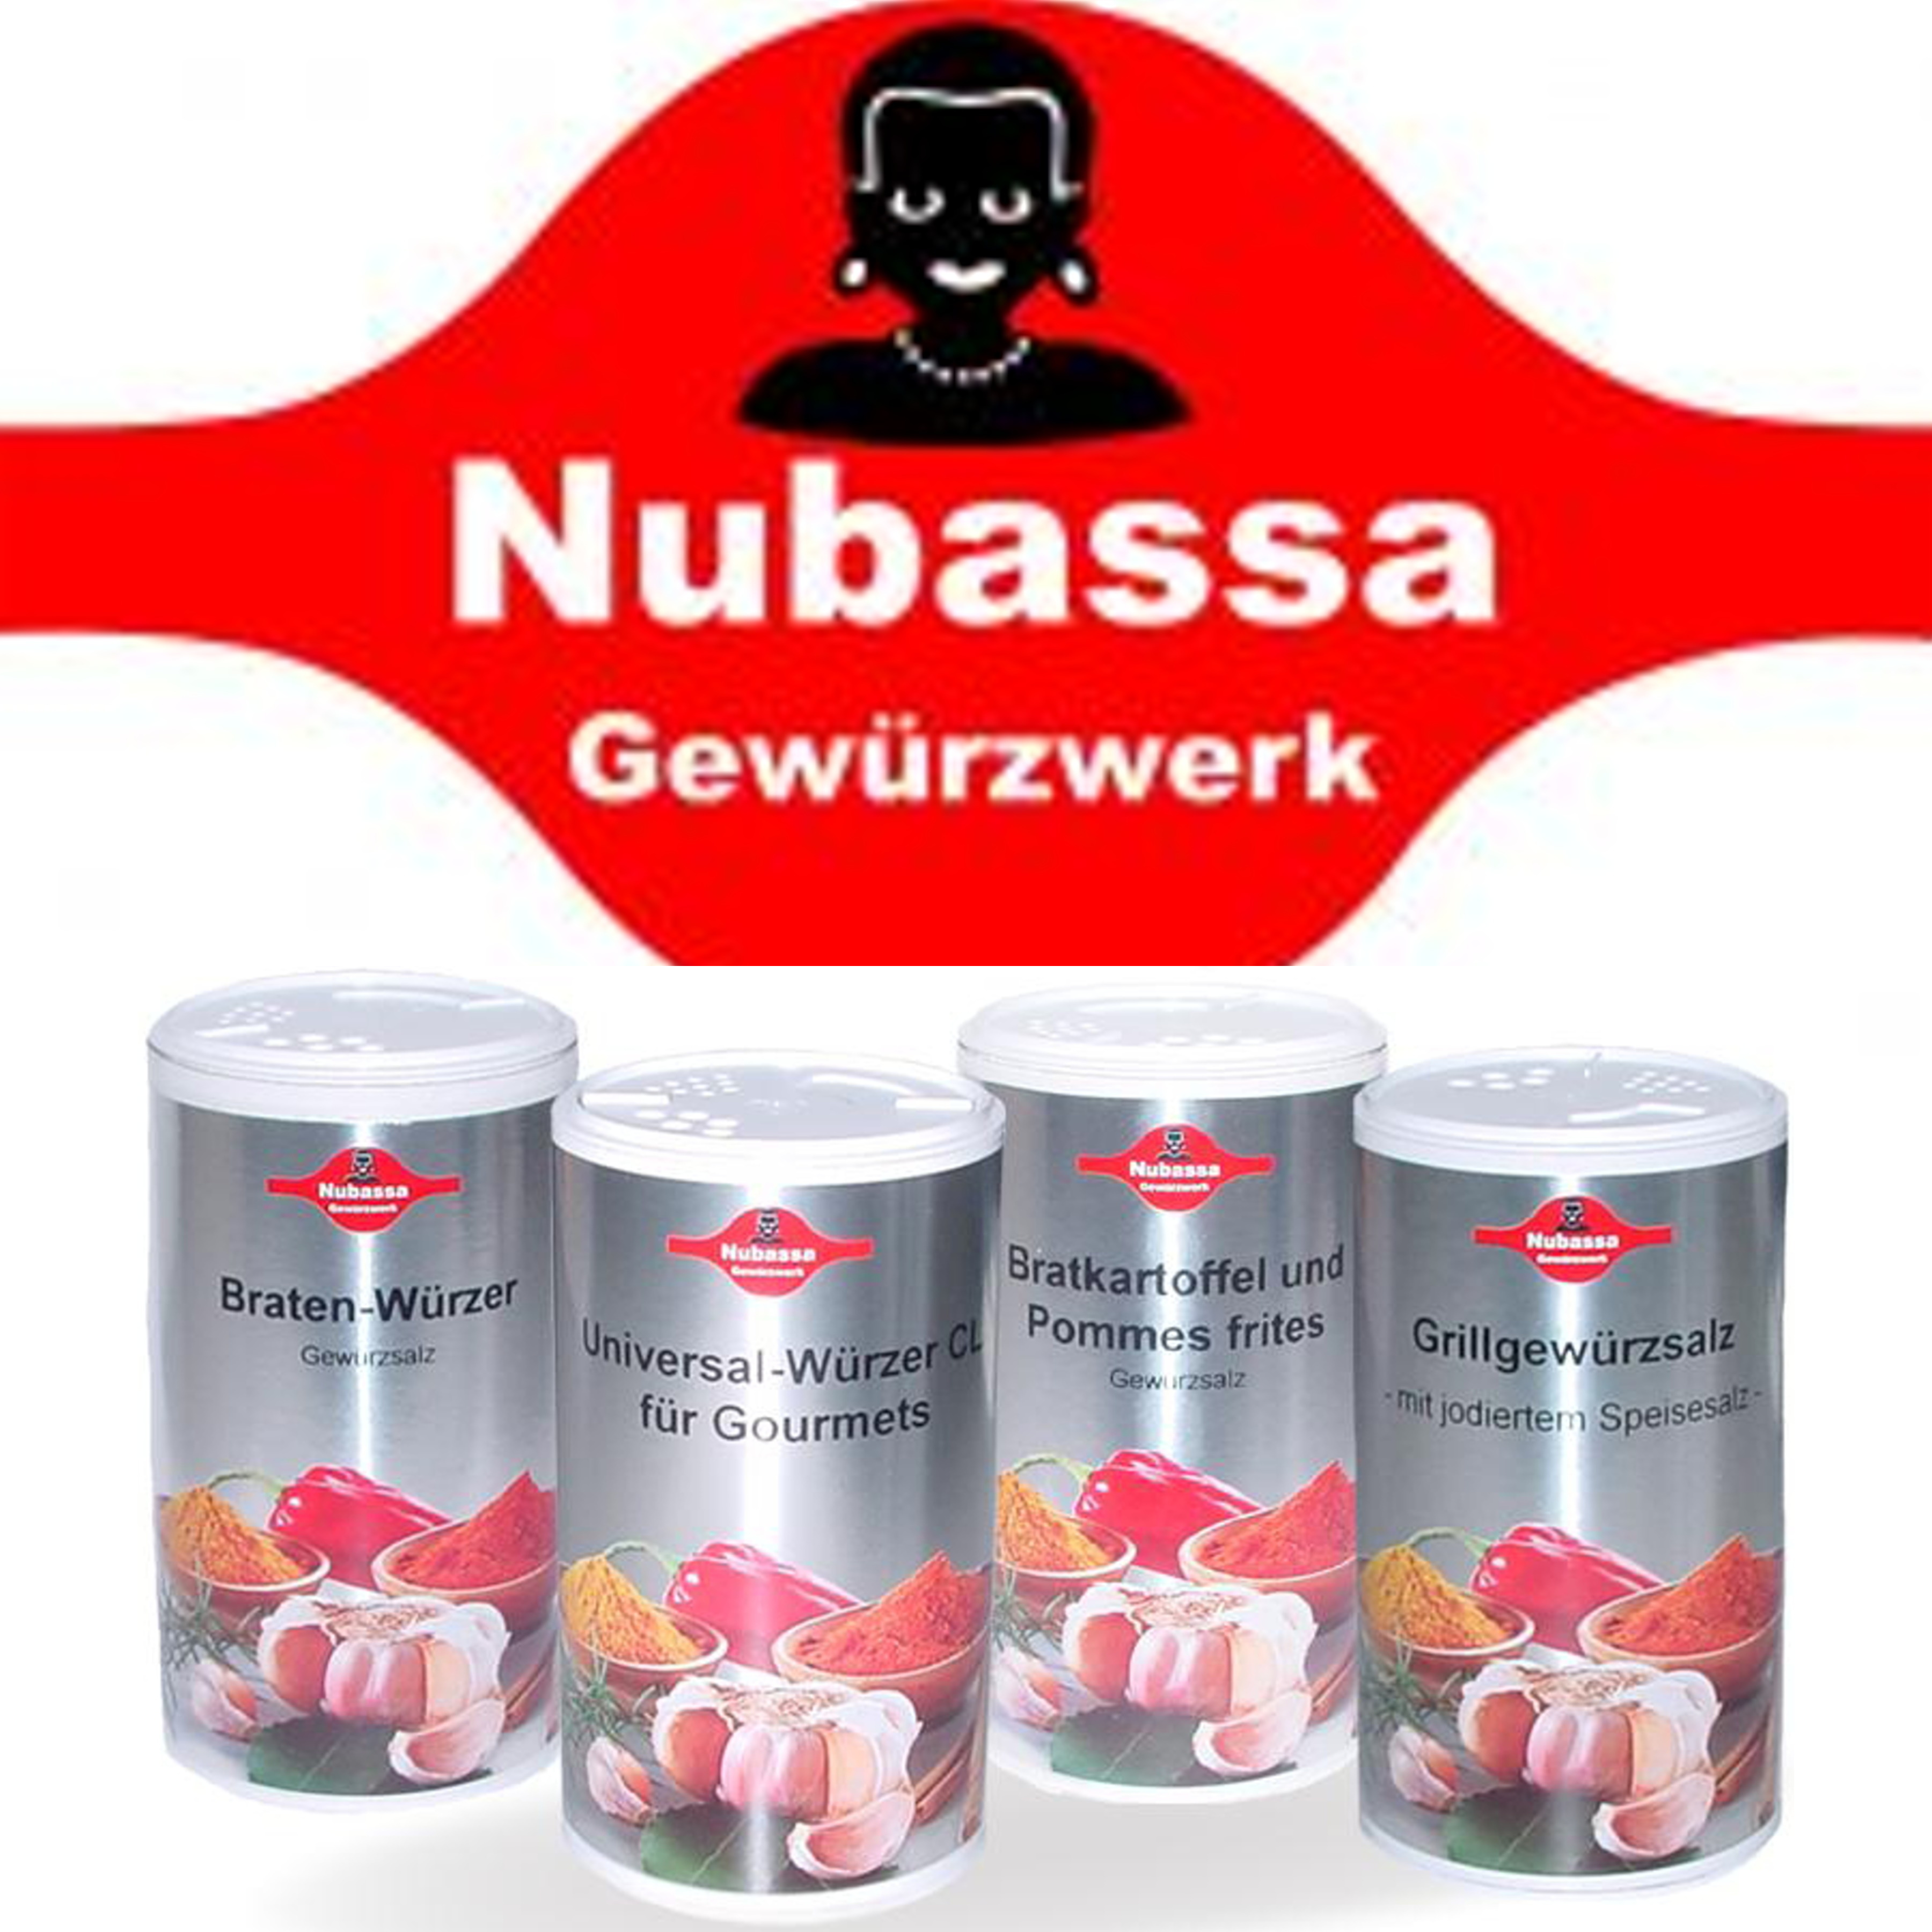 Nubassa-Produkte-17-01